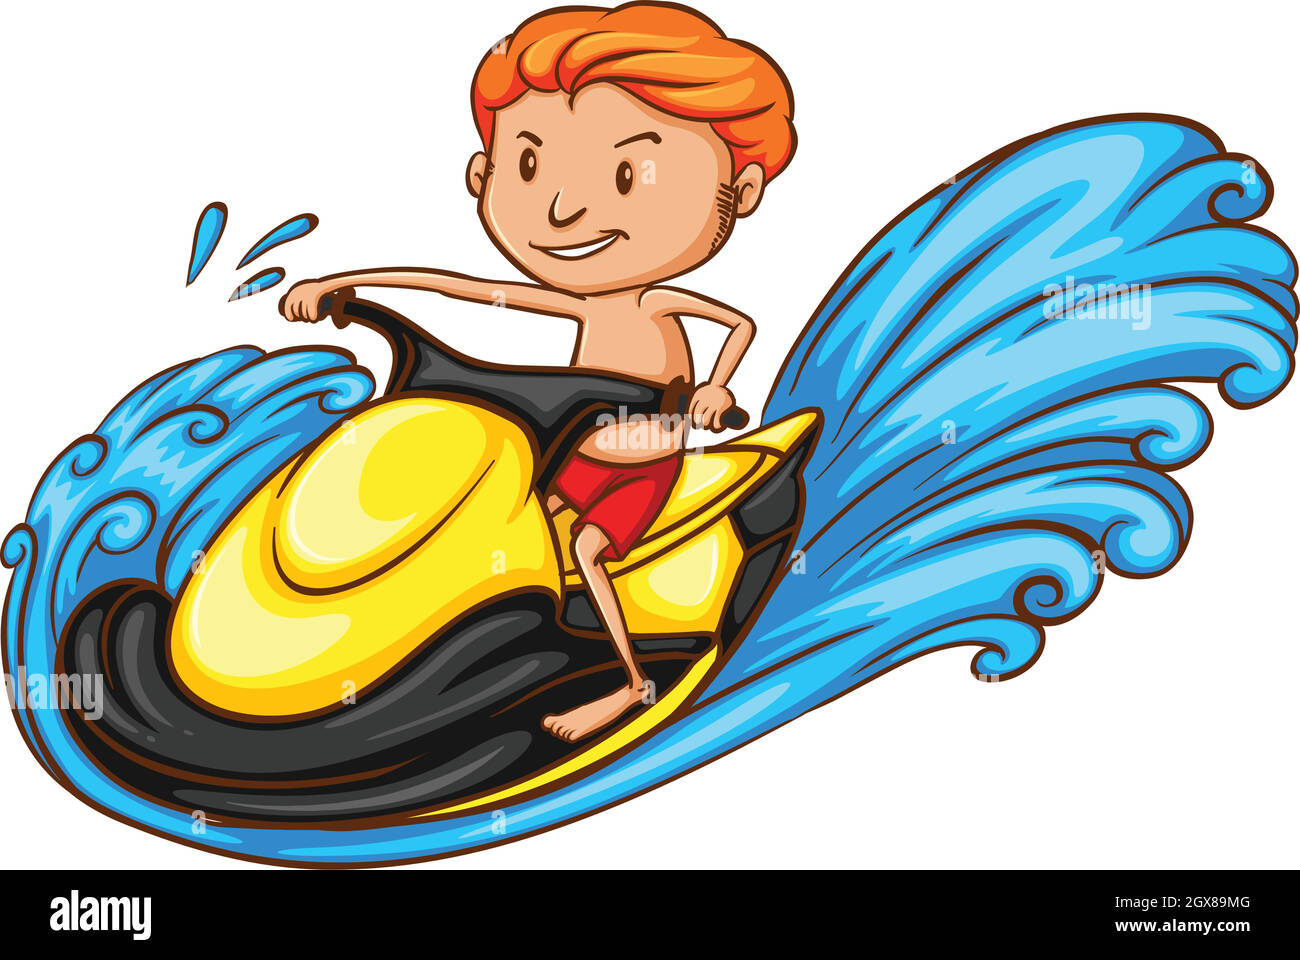 Eine Skizze eines Jungen, der ein Wasserfahrzeug fährt Stock Vektor